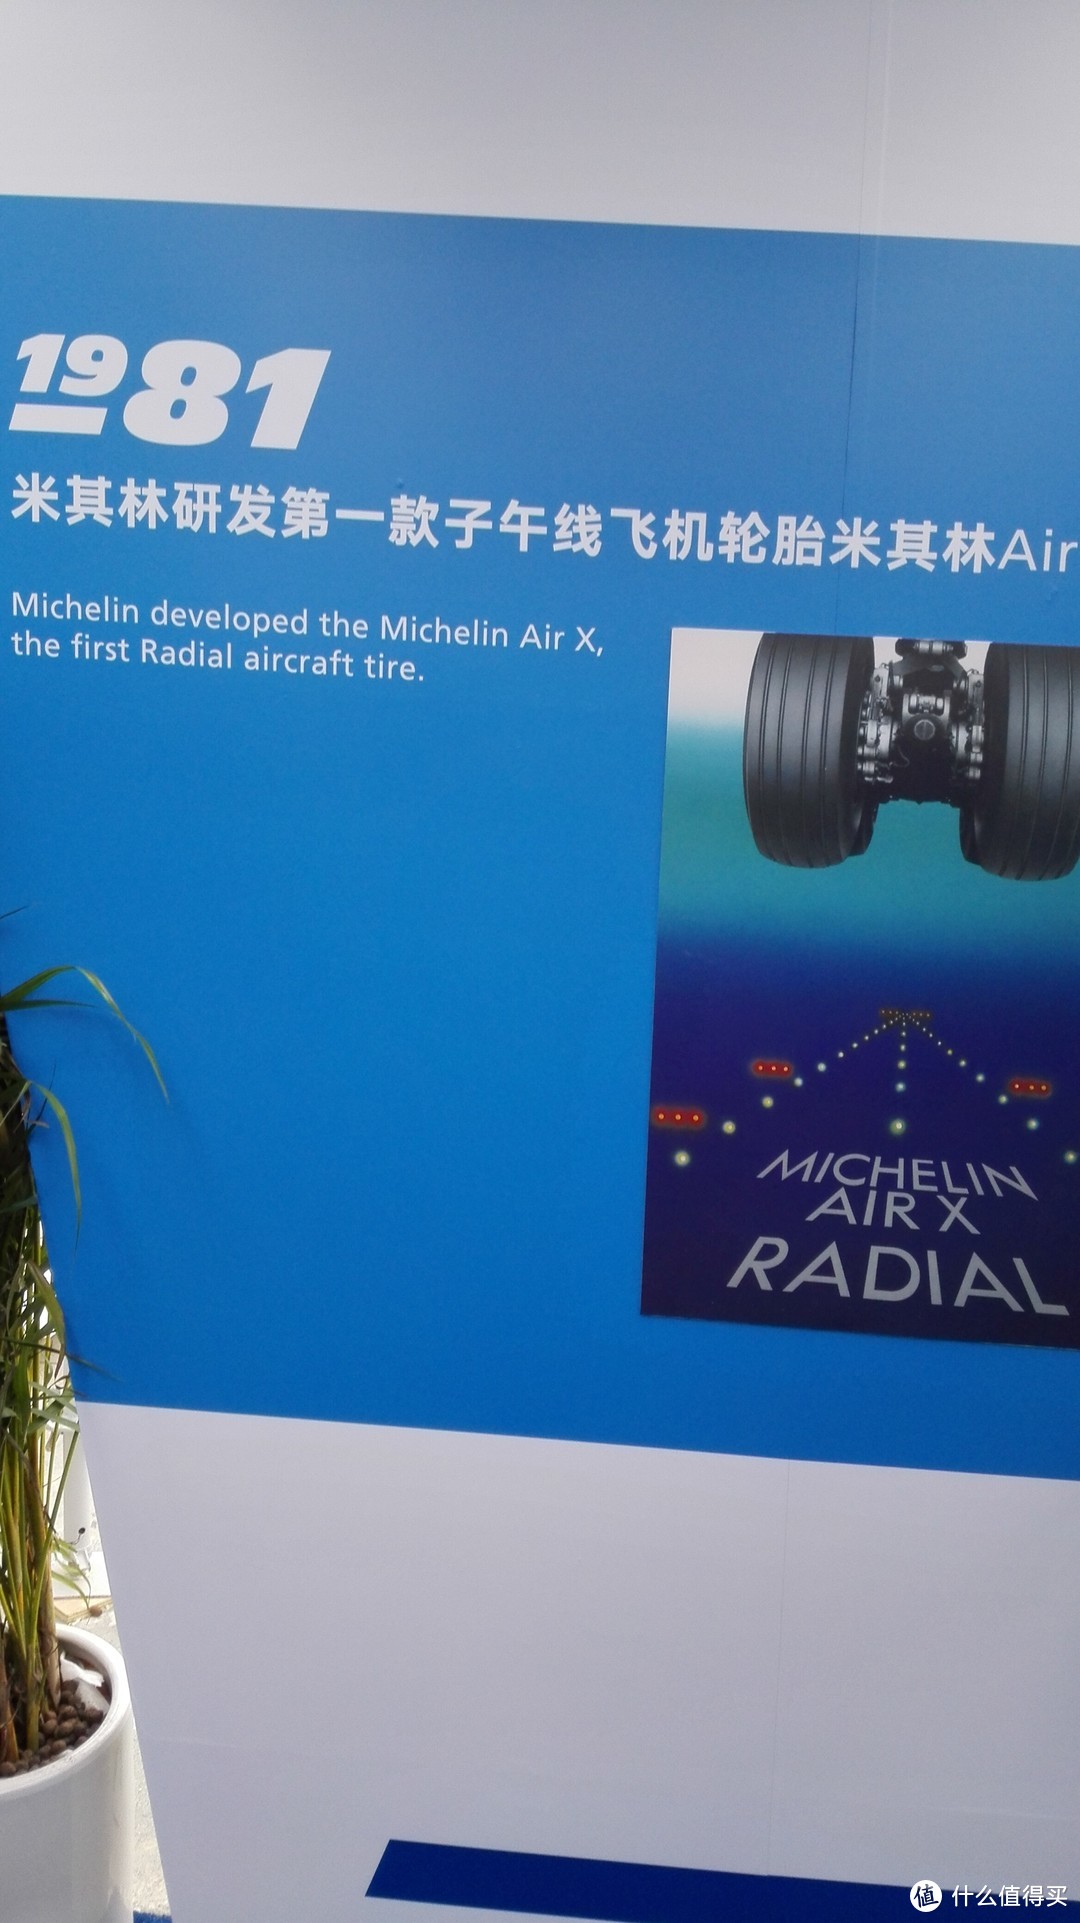 大概是米其林在中国的首届城市公共活动-米其林乐游天地